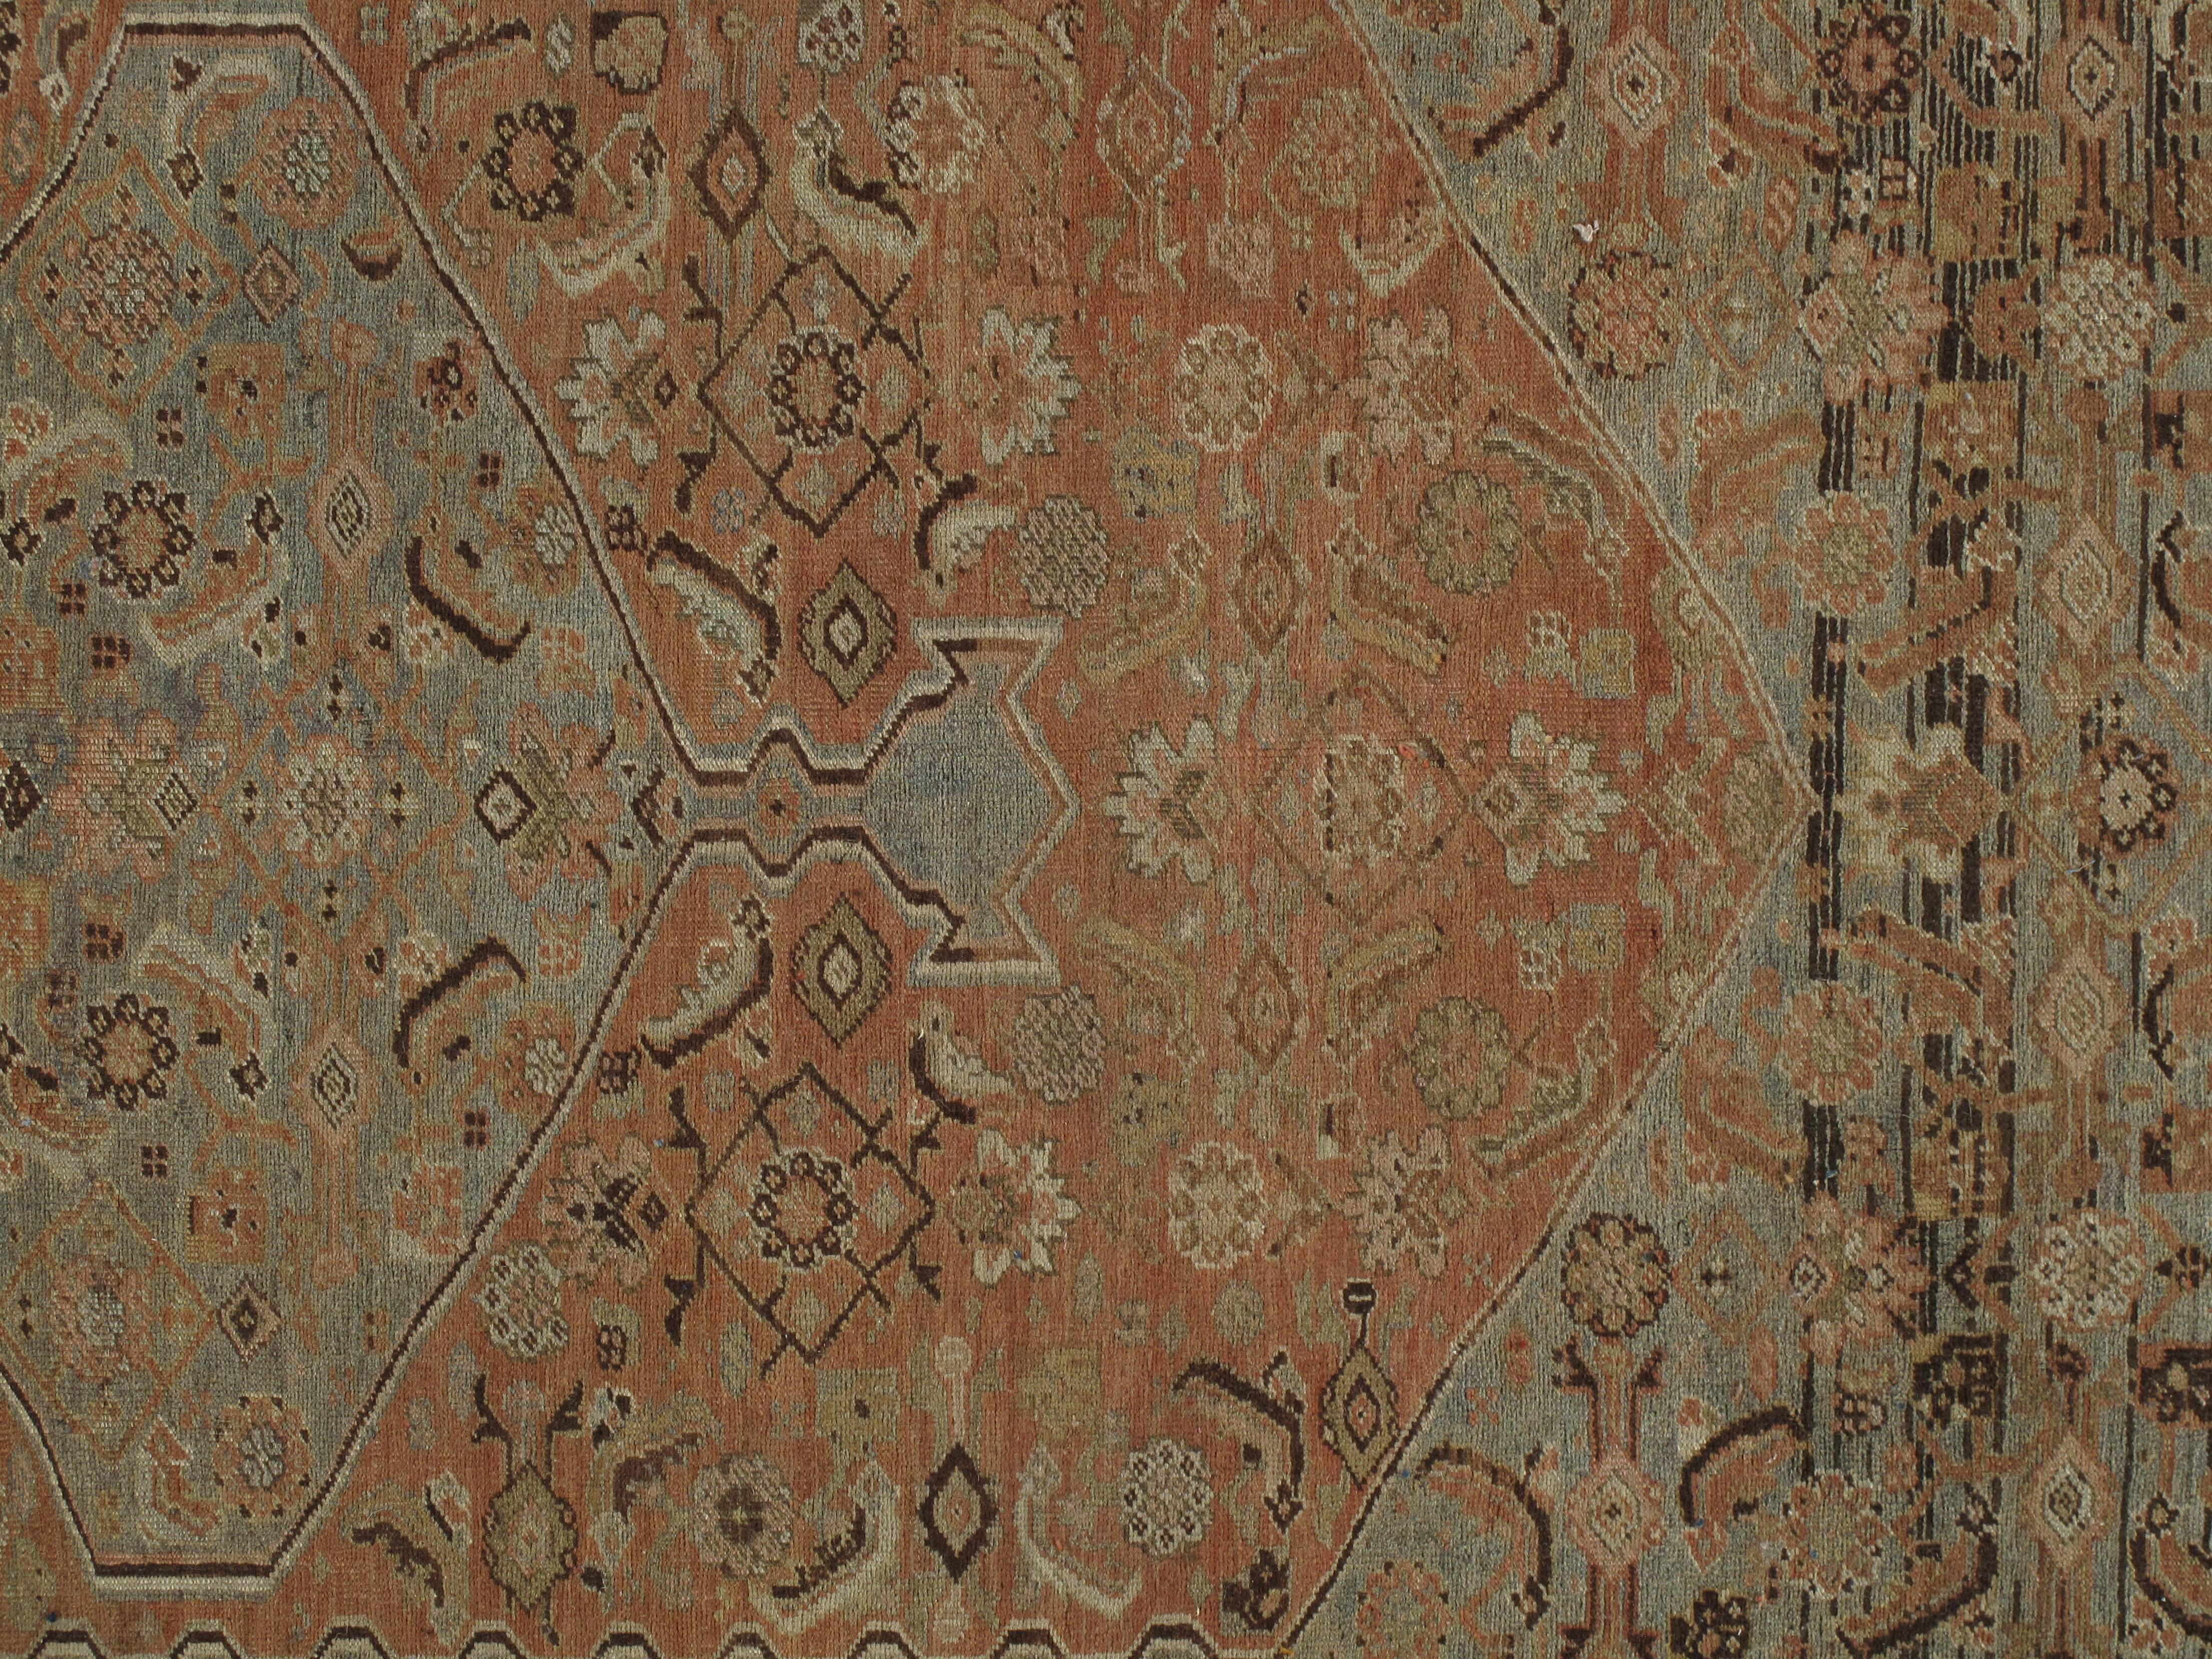 Bidjar-Teppiche werden oft als die Eisenteppiche Persiens bezeichnet. Der Bijar ist ein schwerer, strapazierfähiger Teppich, der in den Vereinigten Staaten sehr beliebt ist. Die meisten Bidjar-Teppiche werden von Kurden in der Region Gerus geknüpft.